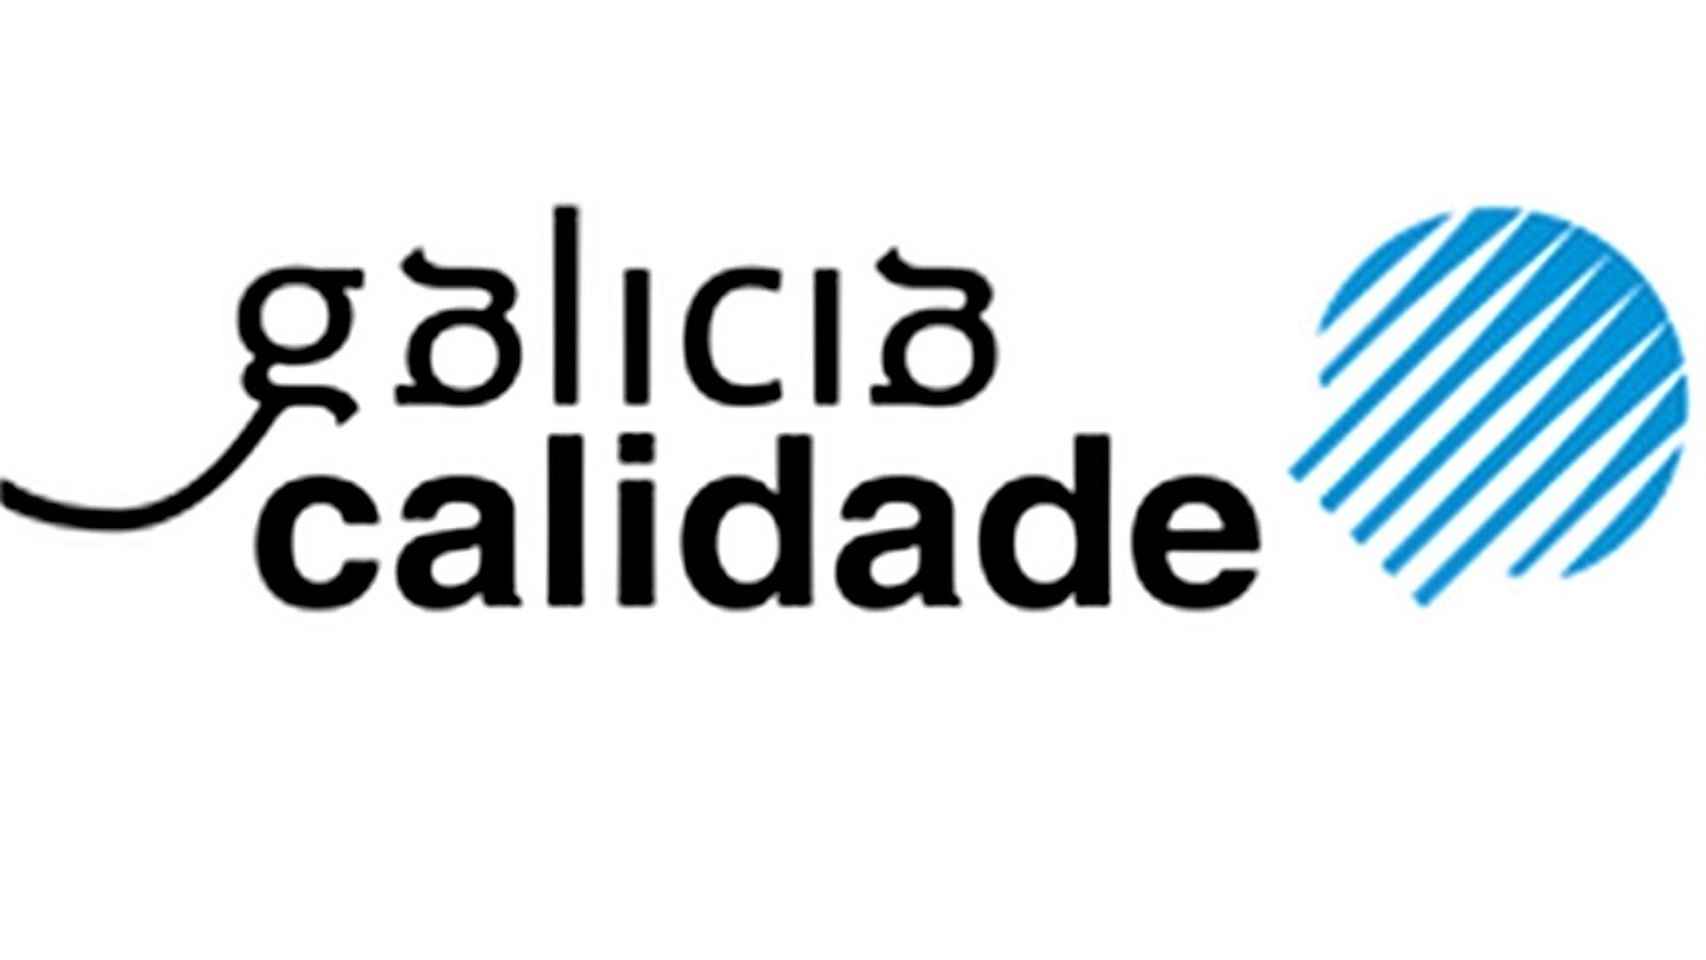 El sello de Galicia Calidade garantiza que el animal ha sido pescado en las rías gallegas.